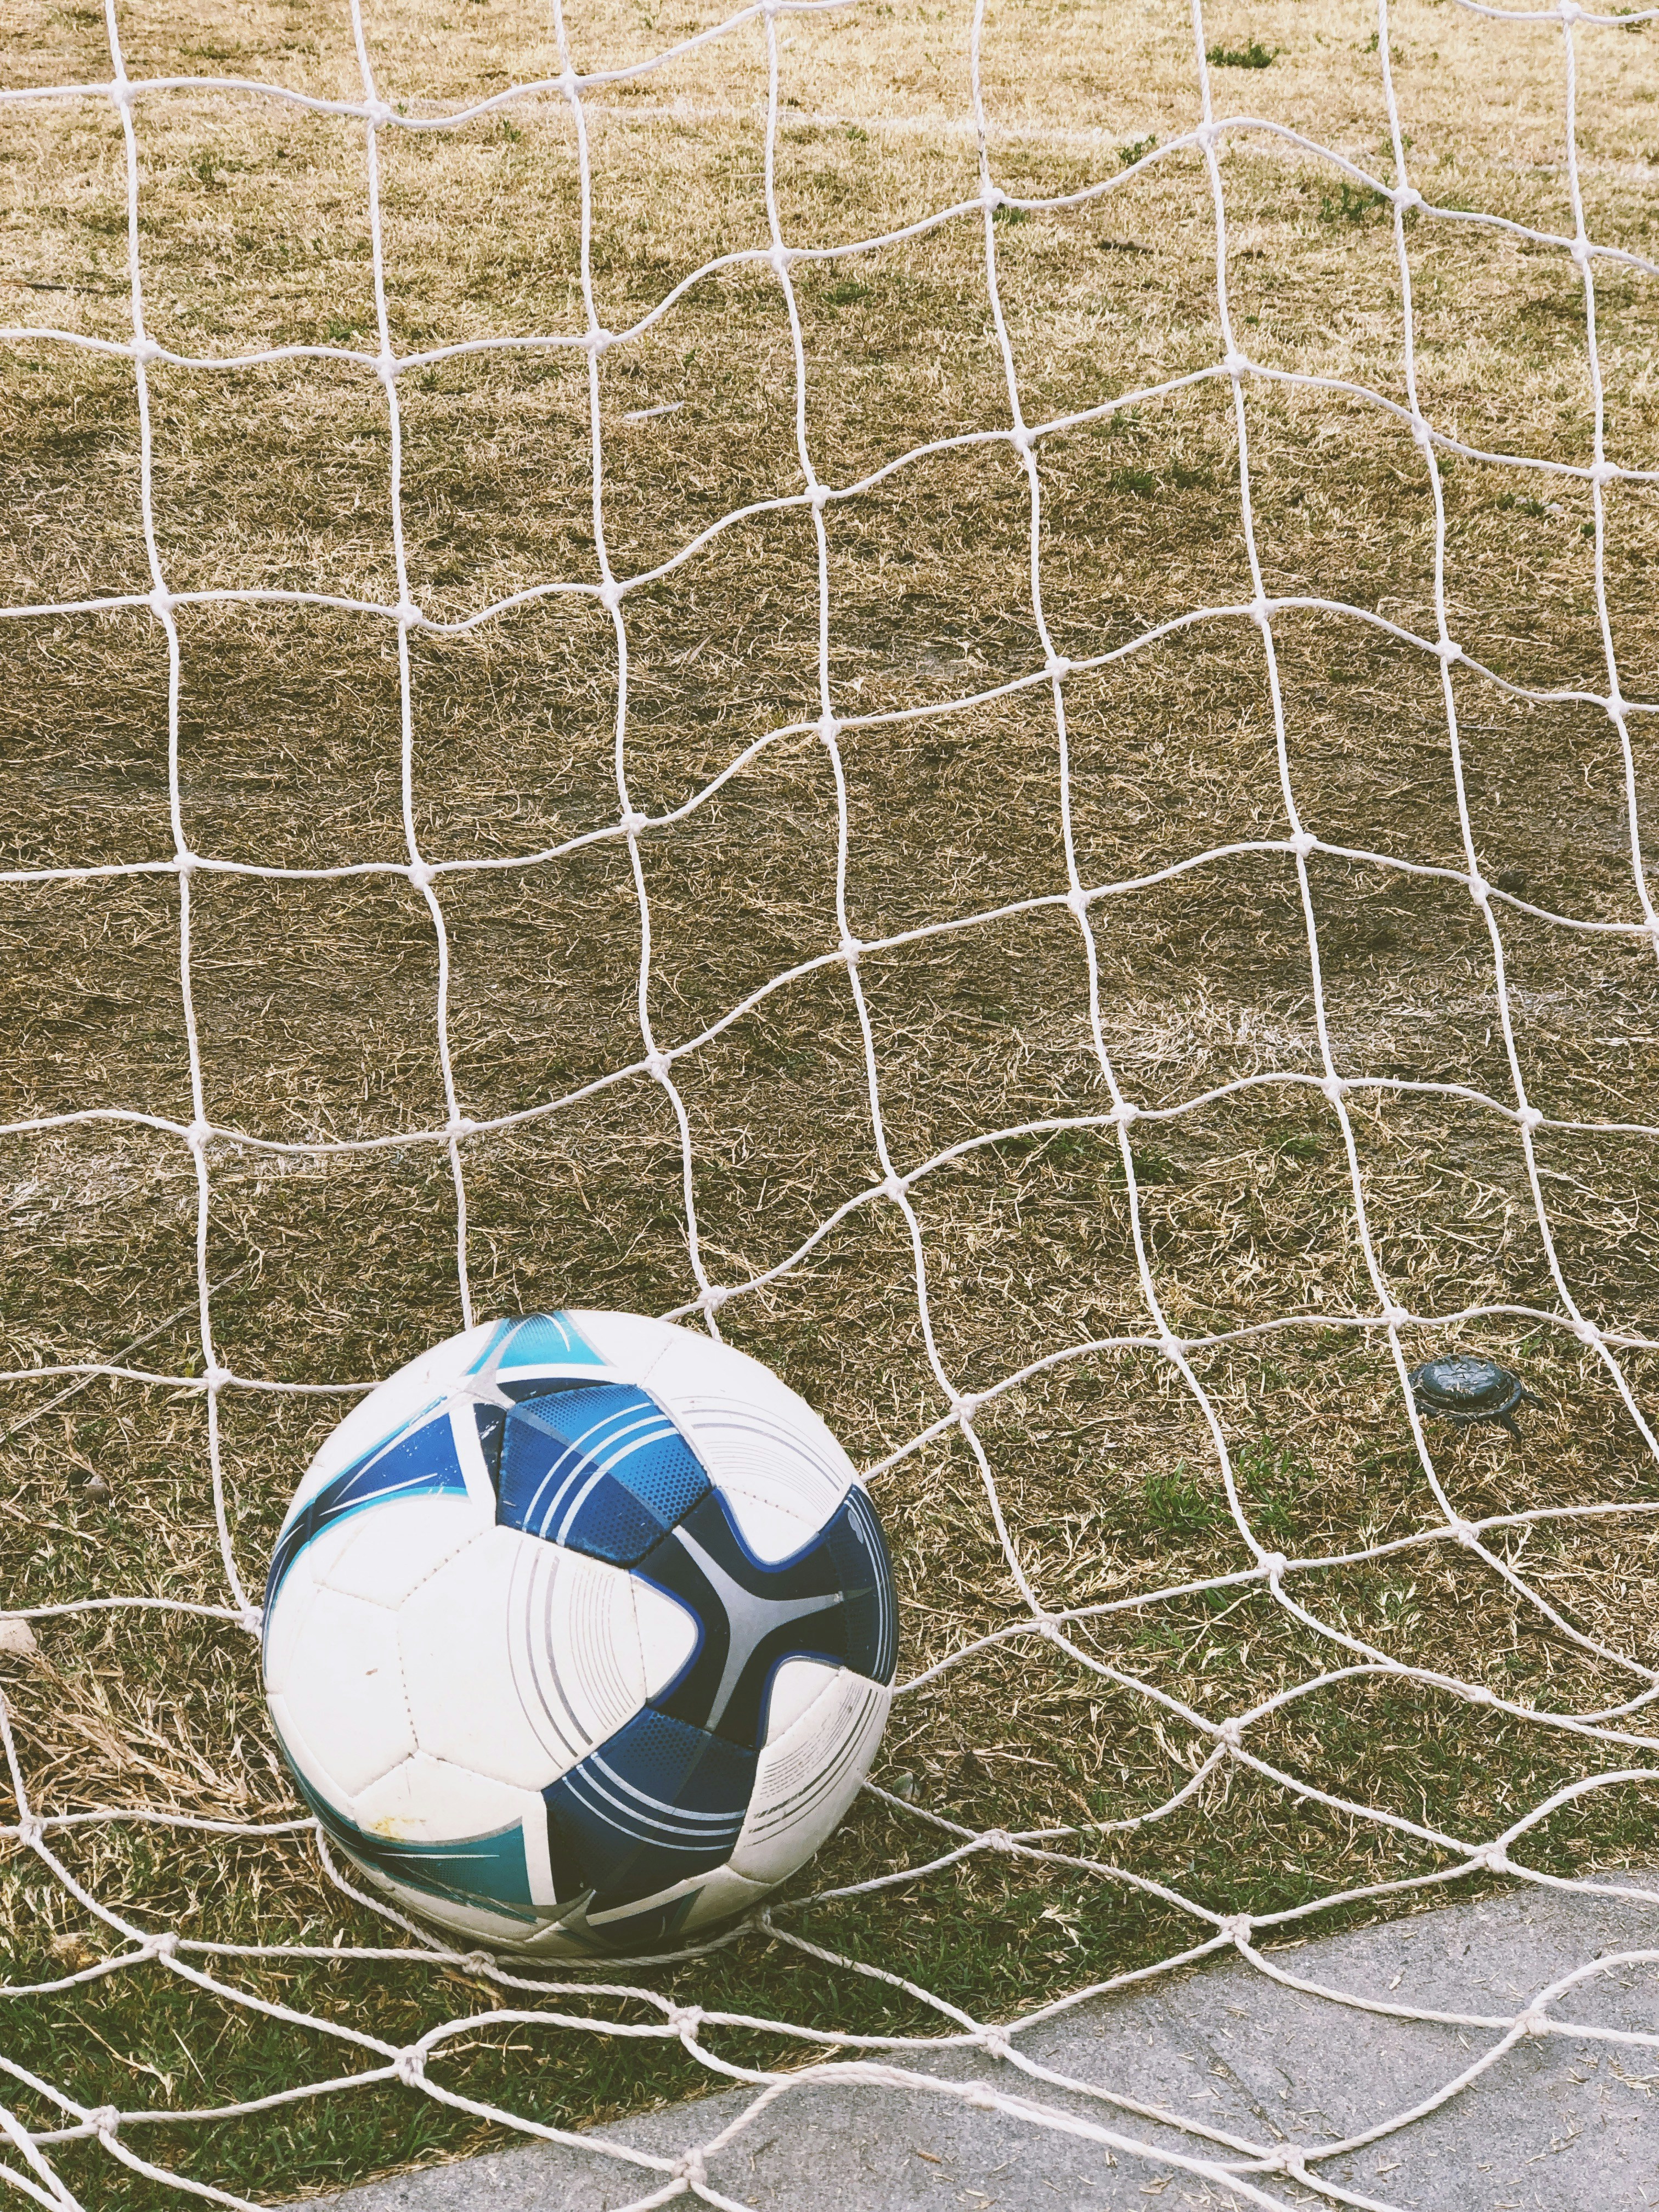 white and blue soccer ball on ground inside goal